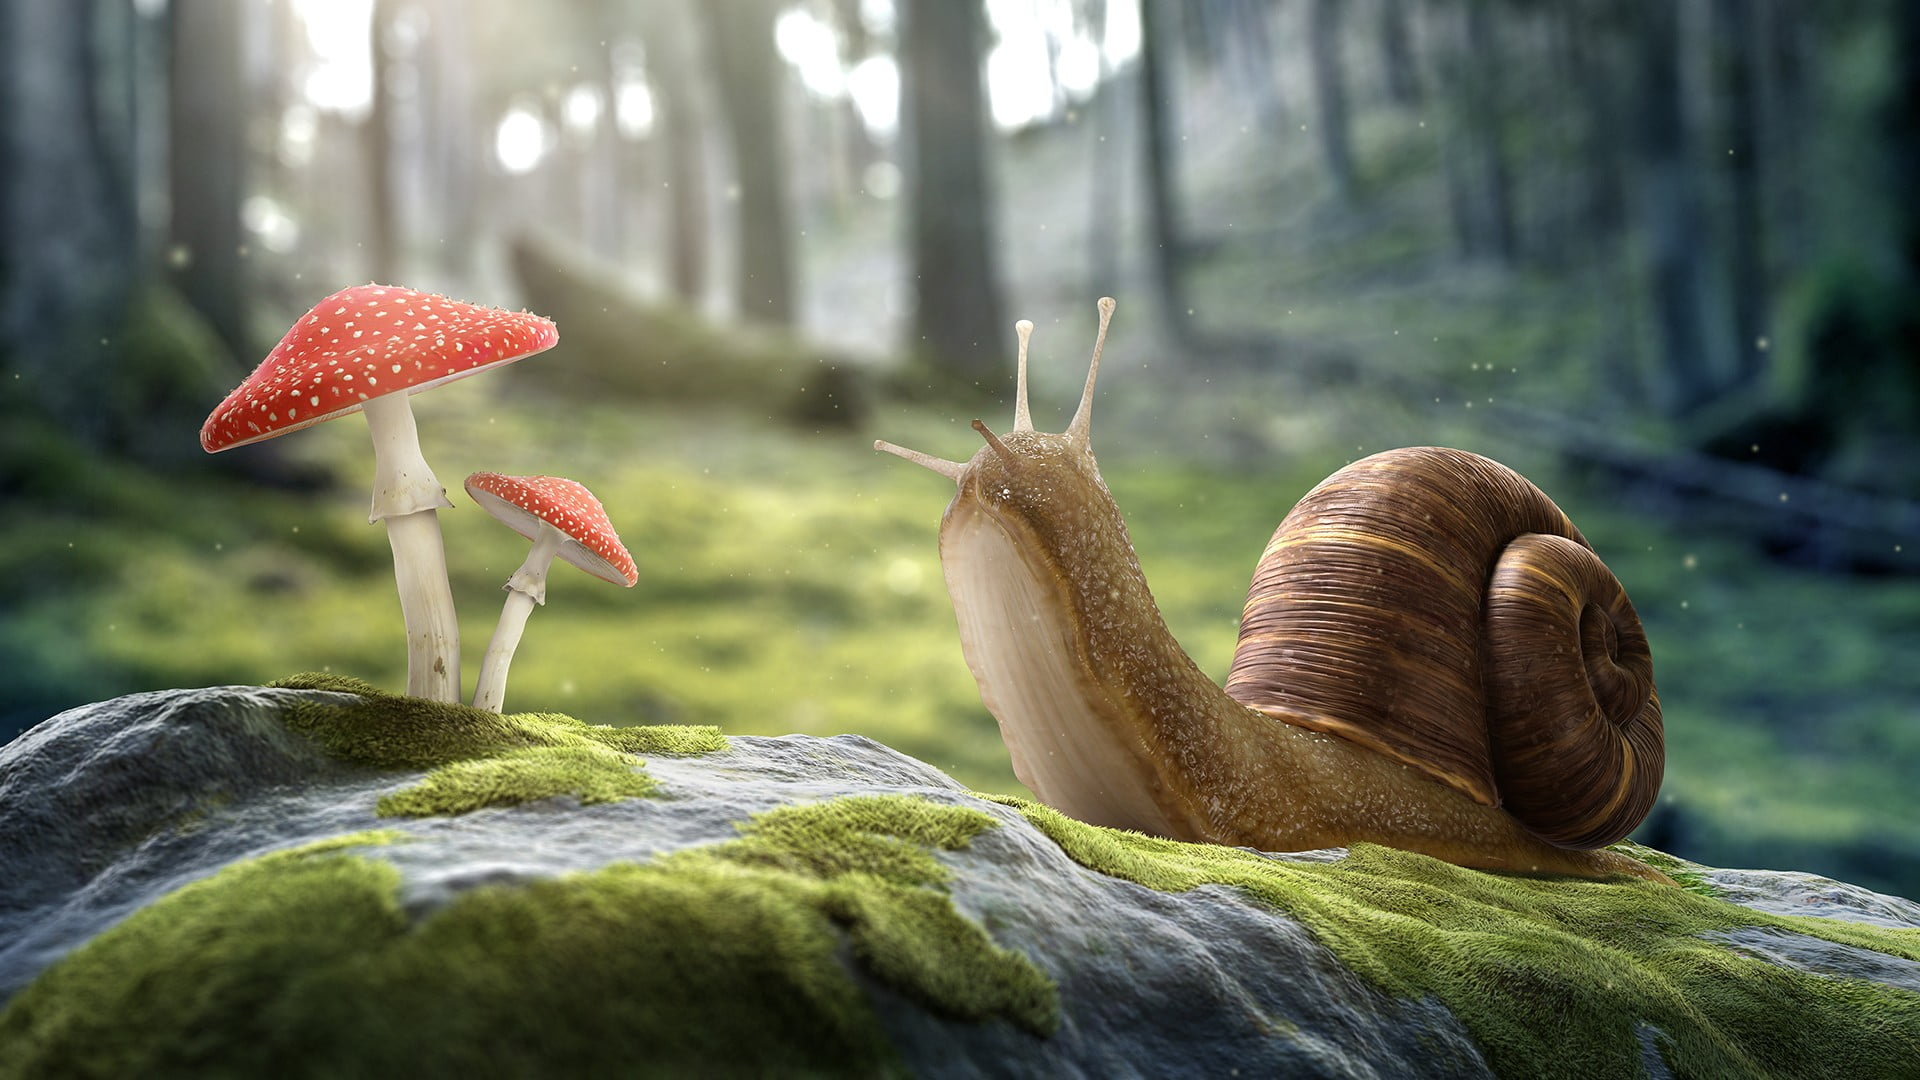 Snail and mushroom illustration HD wallpaper | Wallpaper Flare